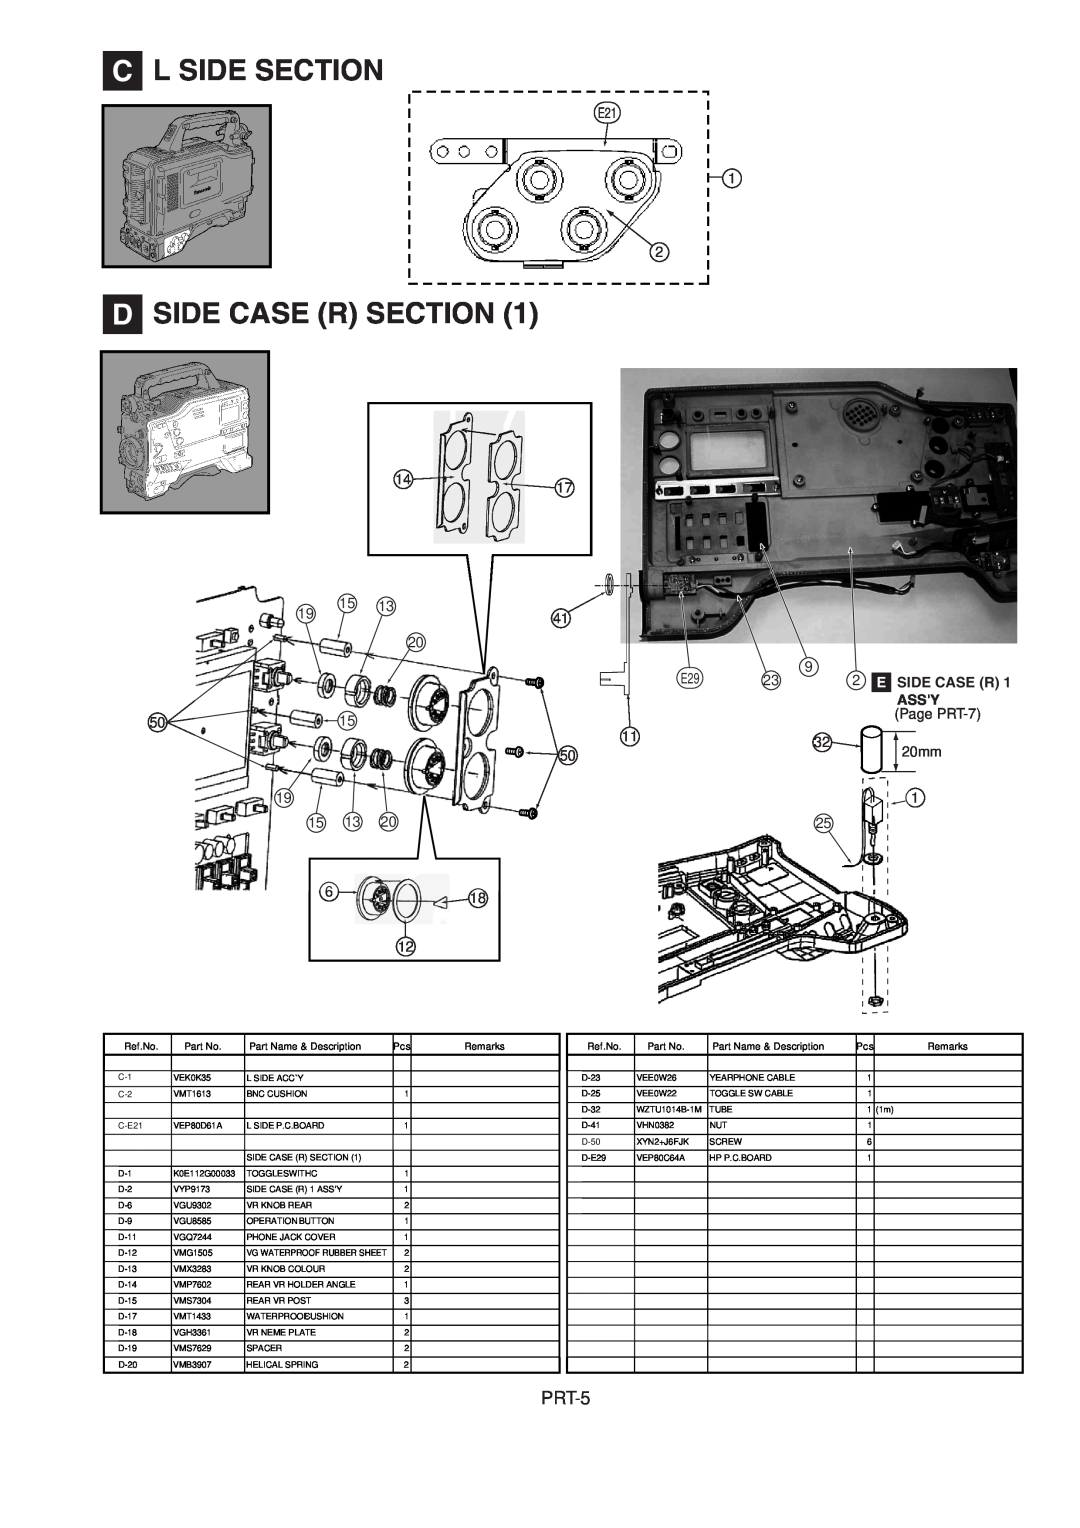 Panasonic AJ-HDX900MC manual C L Side Section, D Side Case R Section, PRT-5, E Side Case R, Assy, Page PRT-7, 20mm, Ref.No 